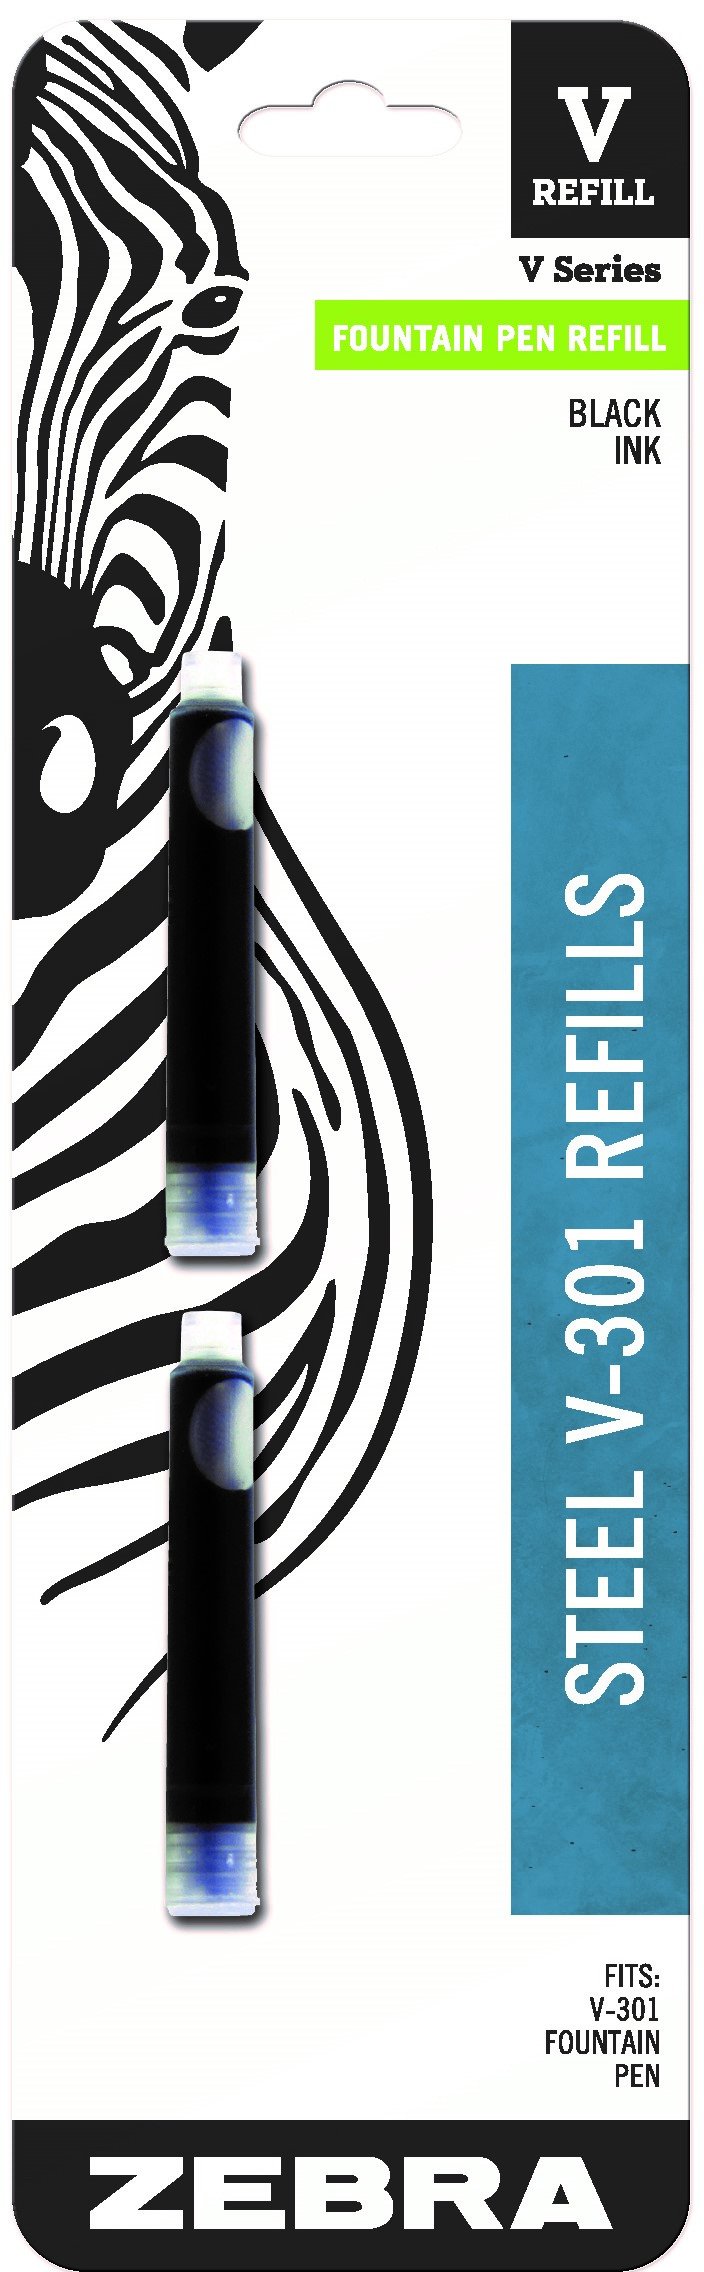 Zebra Pen V-301 Stainless Steel Fountain Pen Refill, Fine Point, 0.7mm, Black Ink, 2-Pack